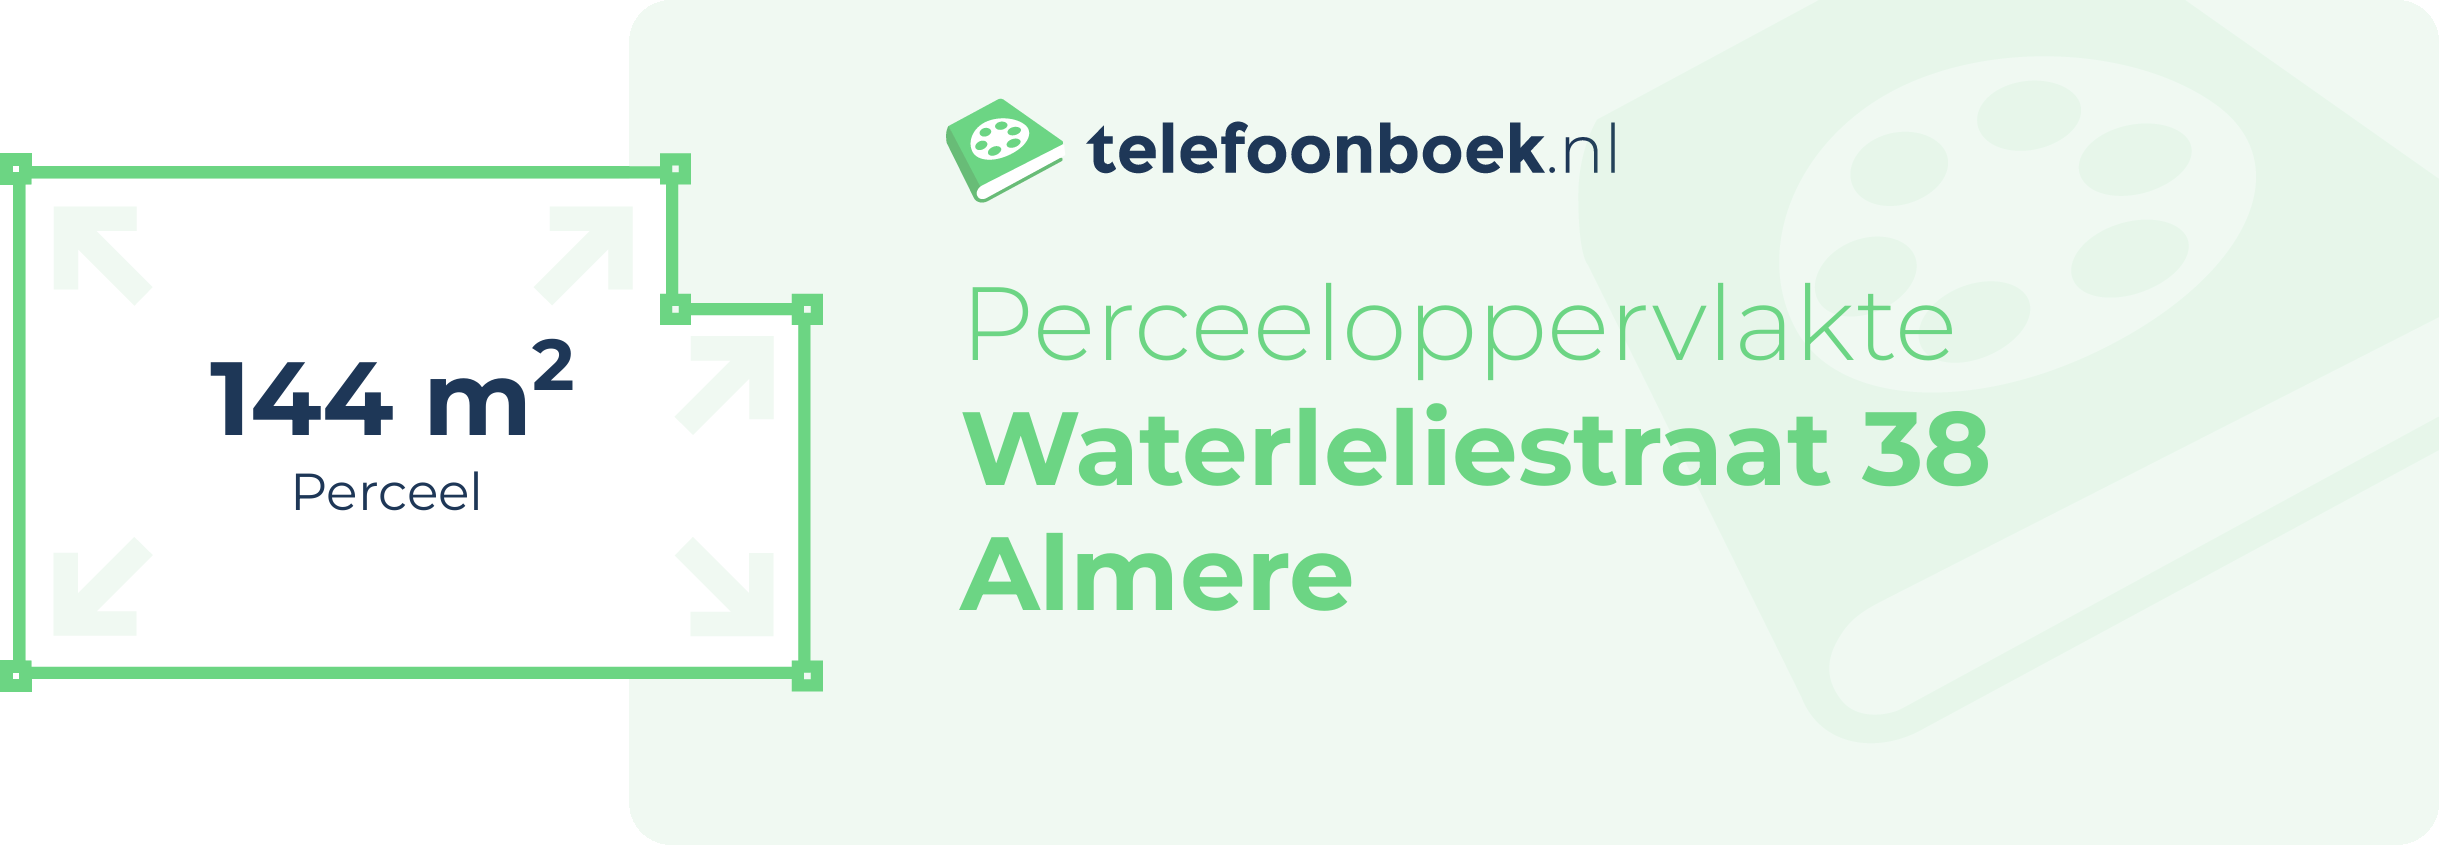 Perceeloppervlakte Waterleliestraat 38 Almere